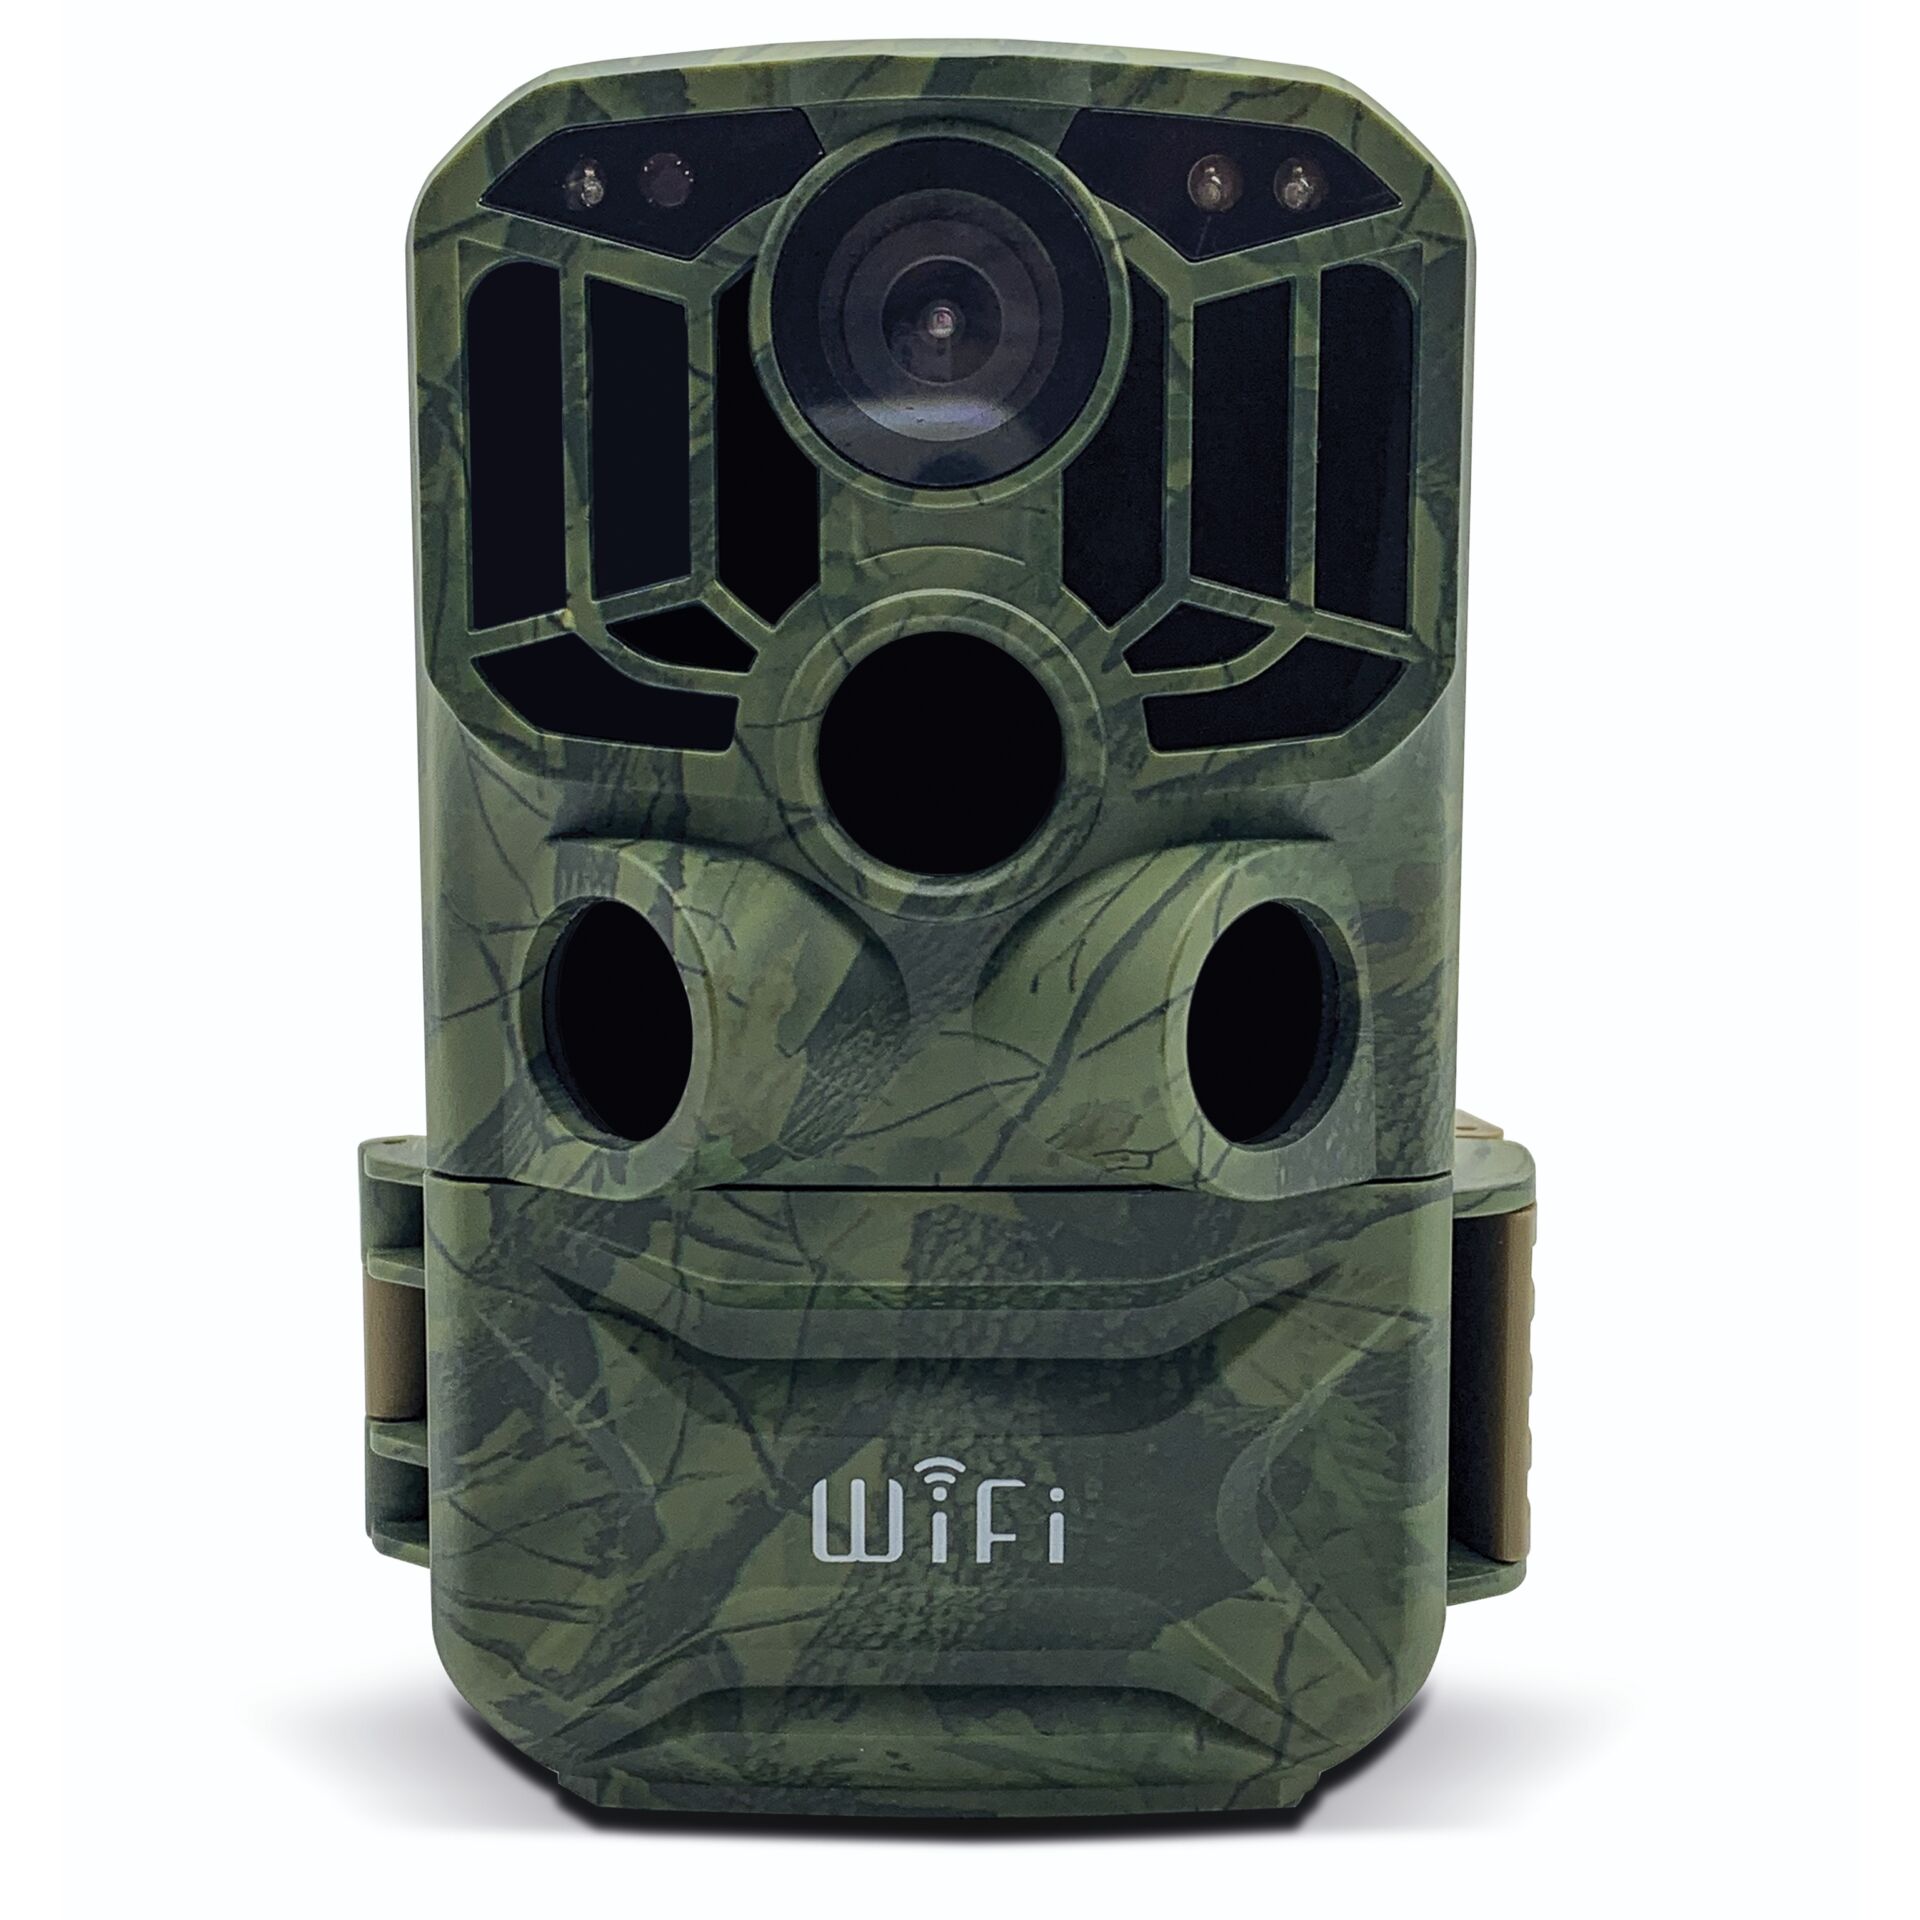 BRAUN Scouting Cam Black800 WiFi, Wildkamera Moderne Wildkamera mit WiFi und 8 Megapixel